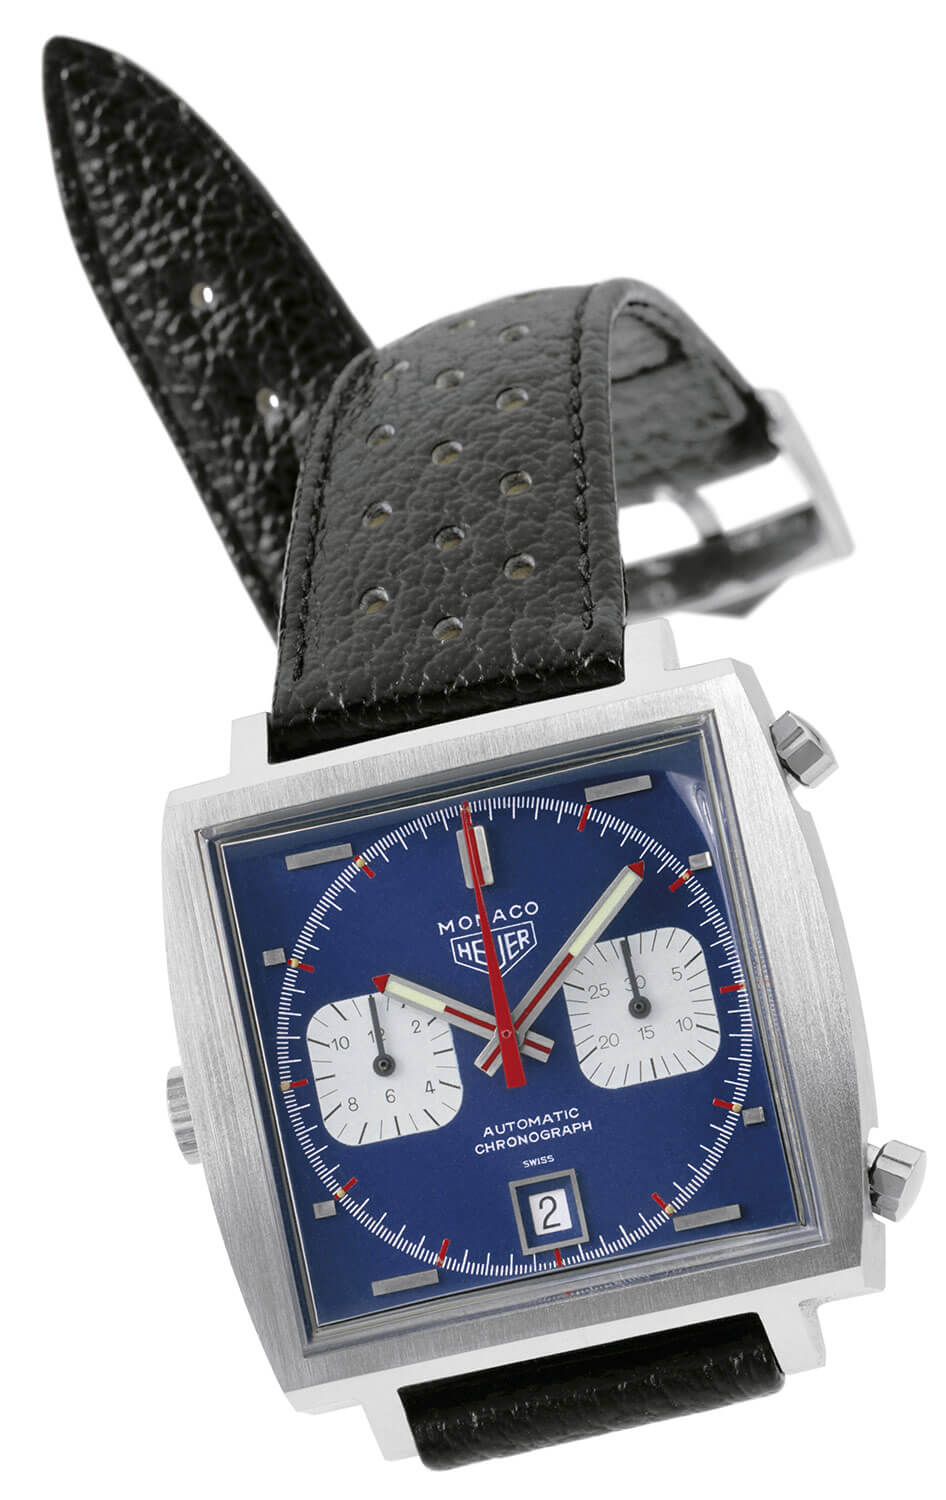 Heuer Monaco chronograph from 1969